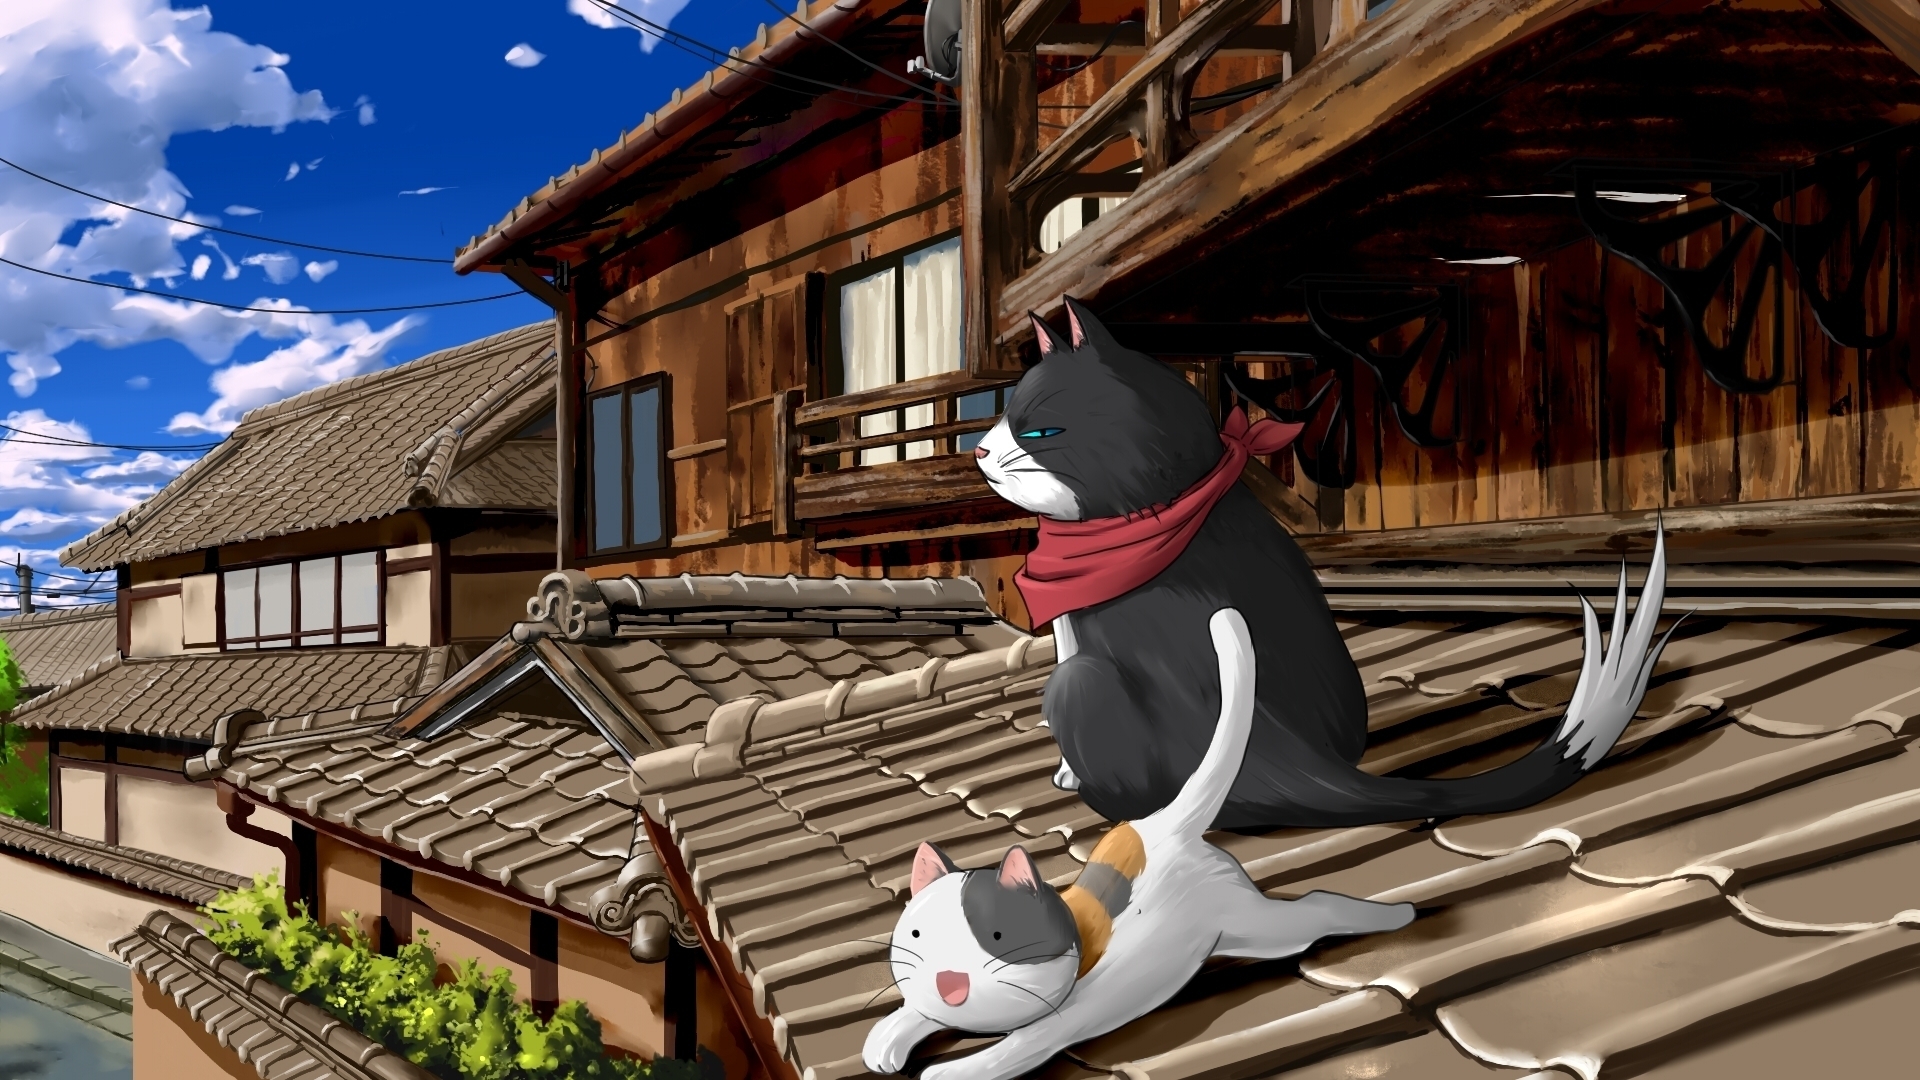 Nyan Koi Anime Series for 1920 x 1080 HDTV 1080p resolution